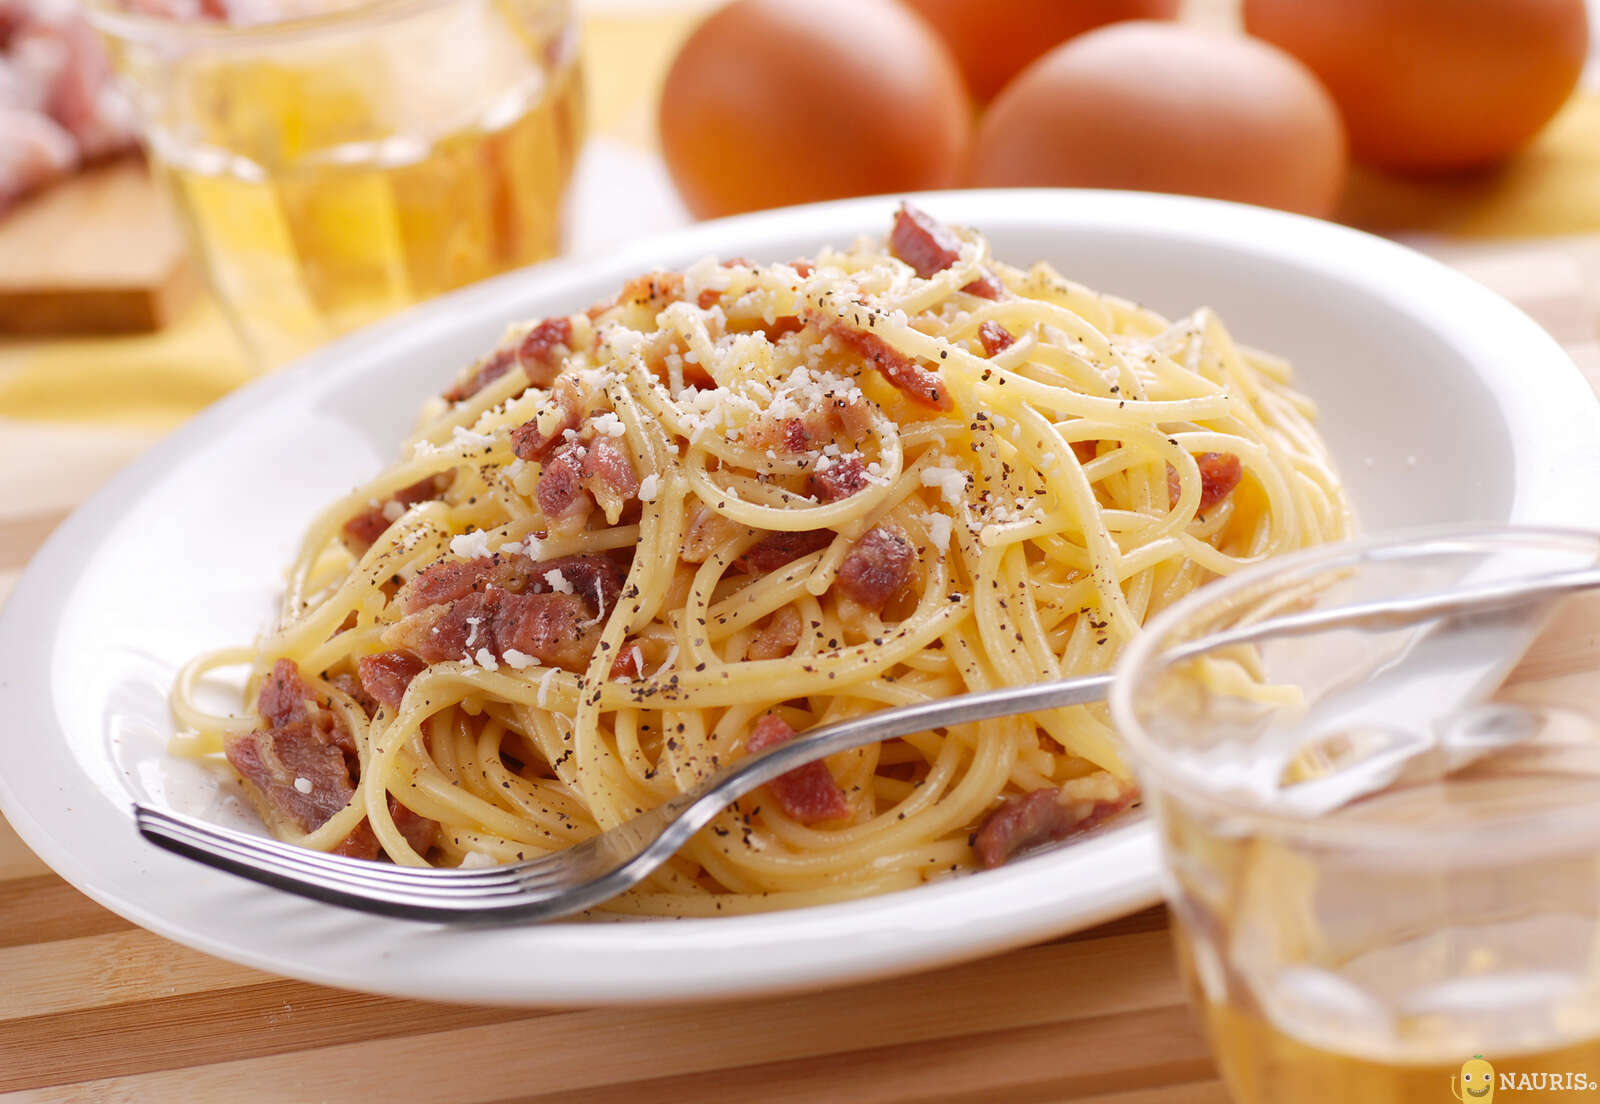 Как выглядит спагетти